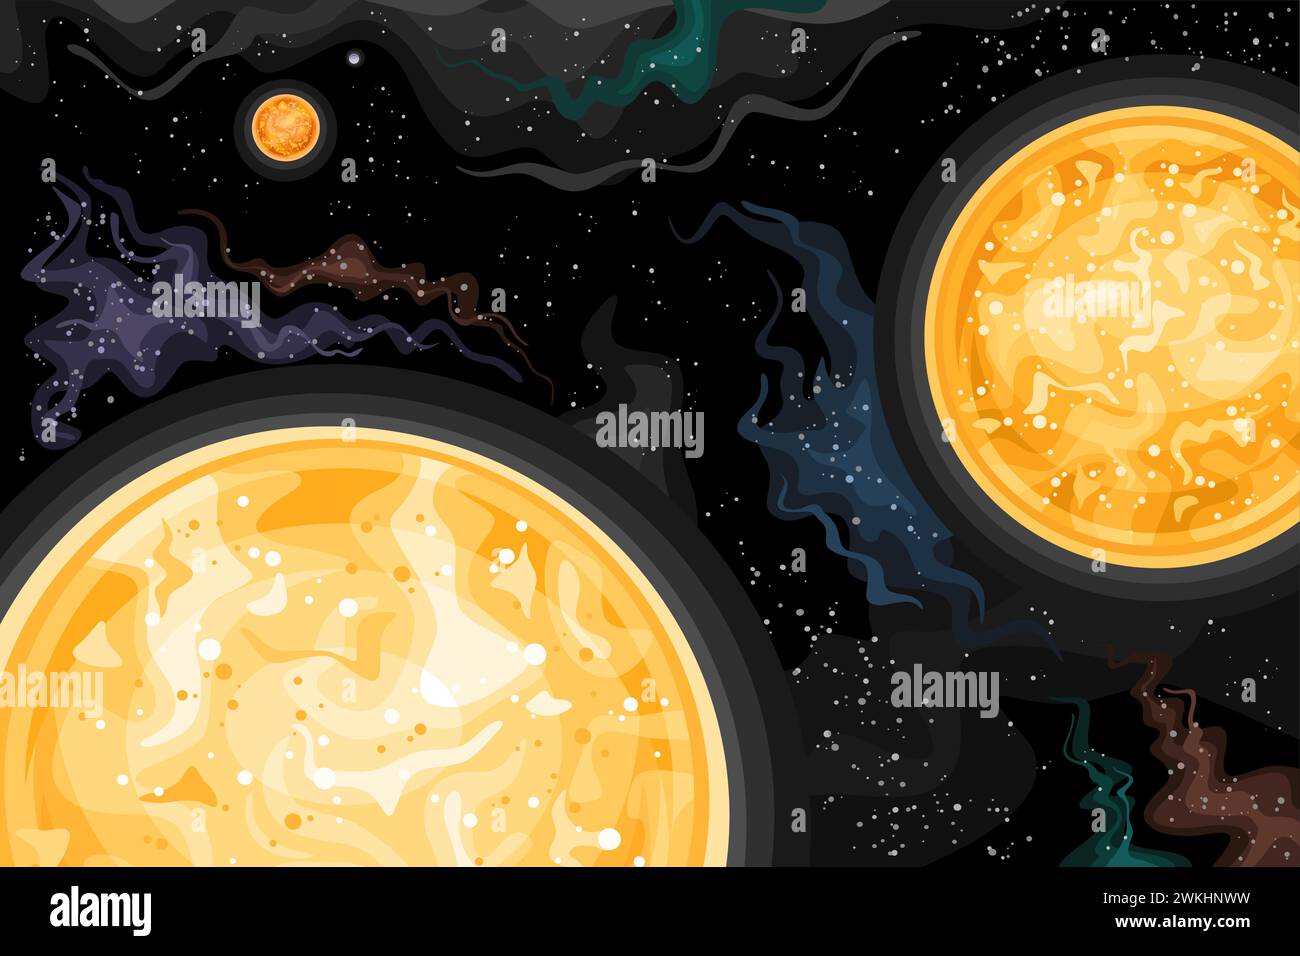 Grafico spaziale Vector Fantasy, poster orizzontale astronomico con illustrazione del sistema stellare Alpha Centauri a tre stelle nello spazio profondo, decorativo o. Illustrazione Vettoriale